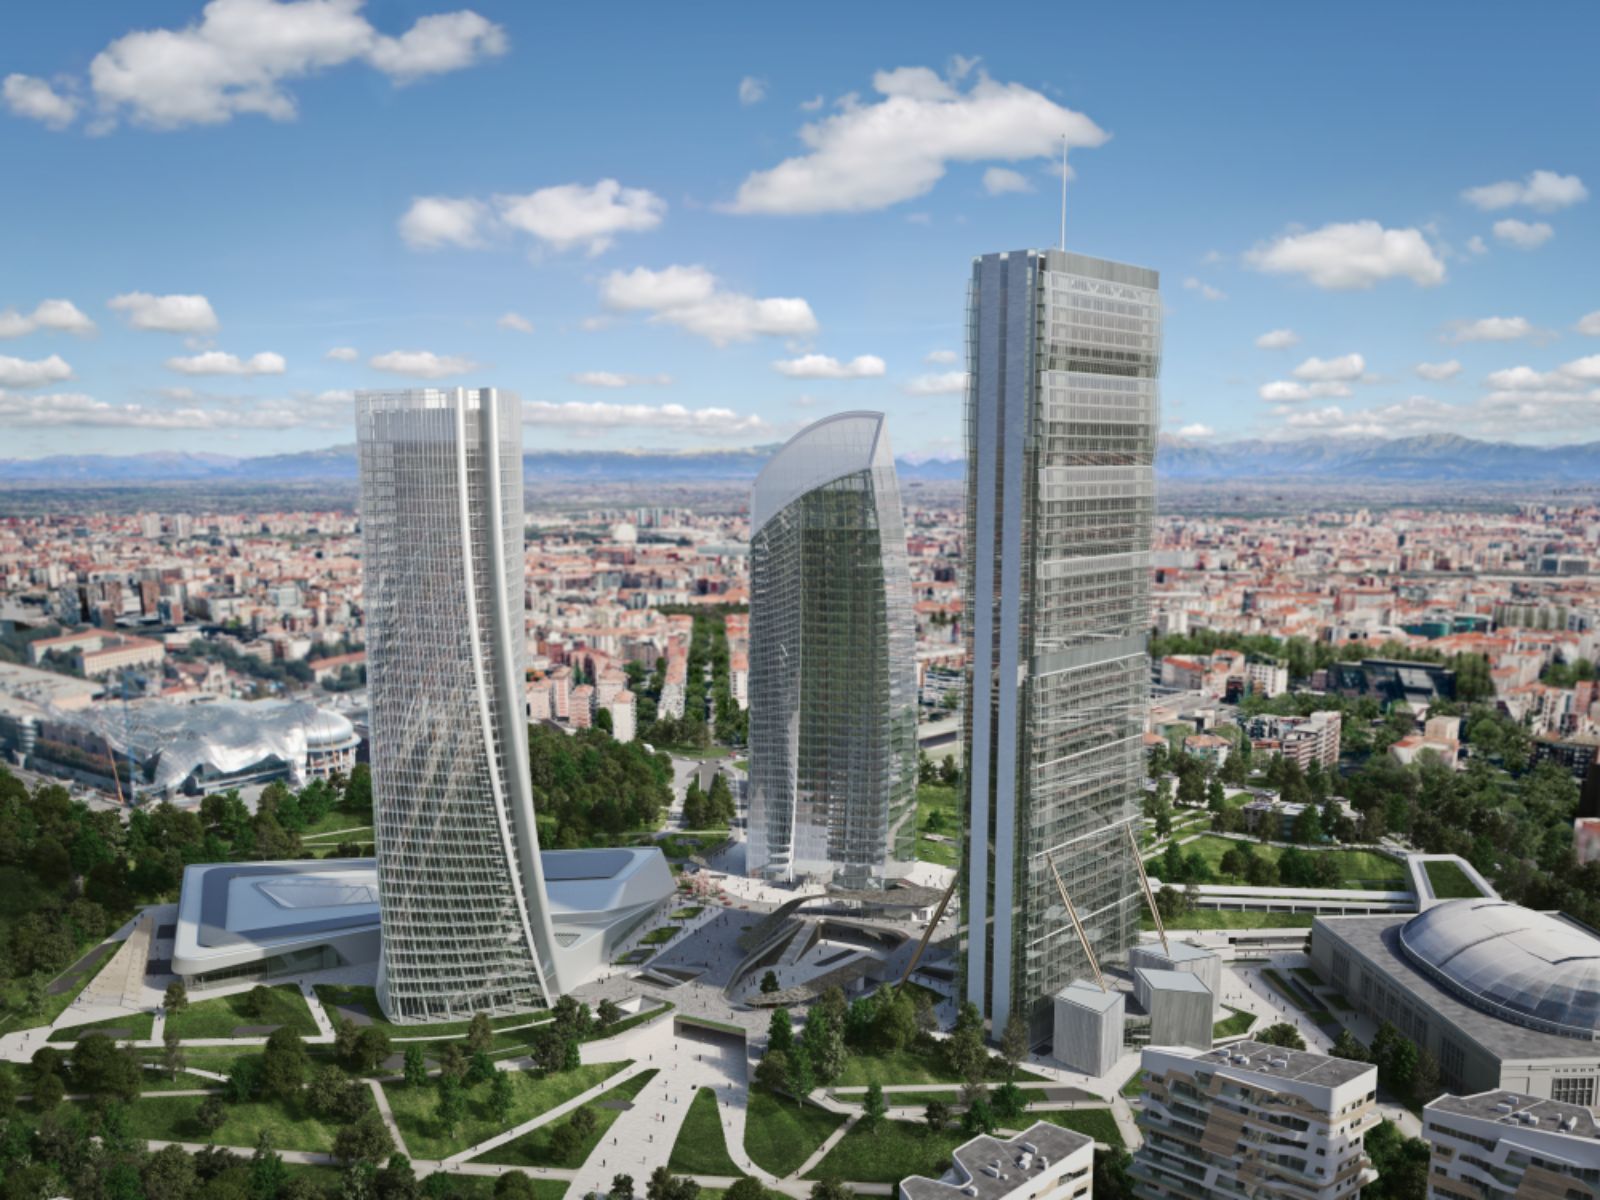 City-Life-Milano-Office-Tower- Under-Constructionby-Zaha-Hadid ...